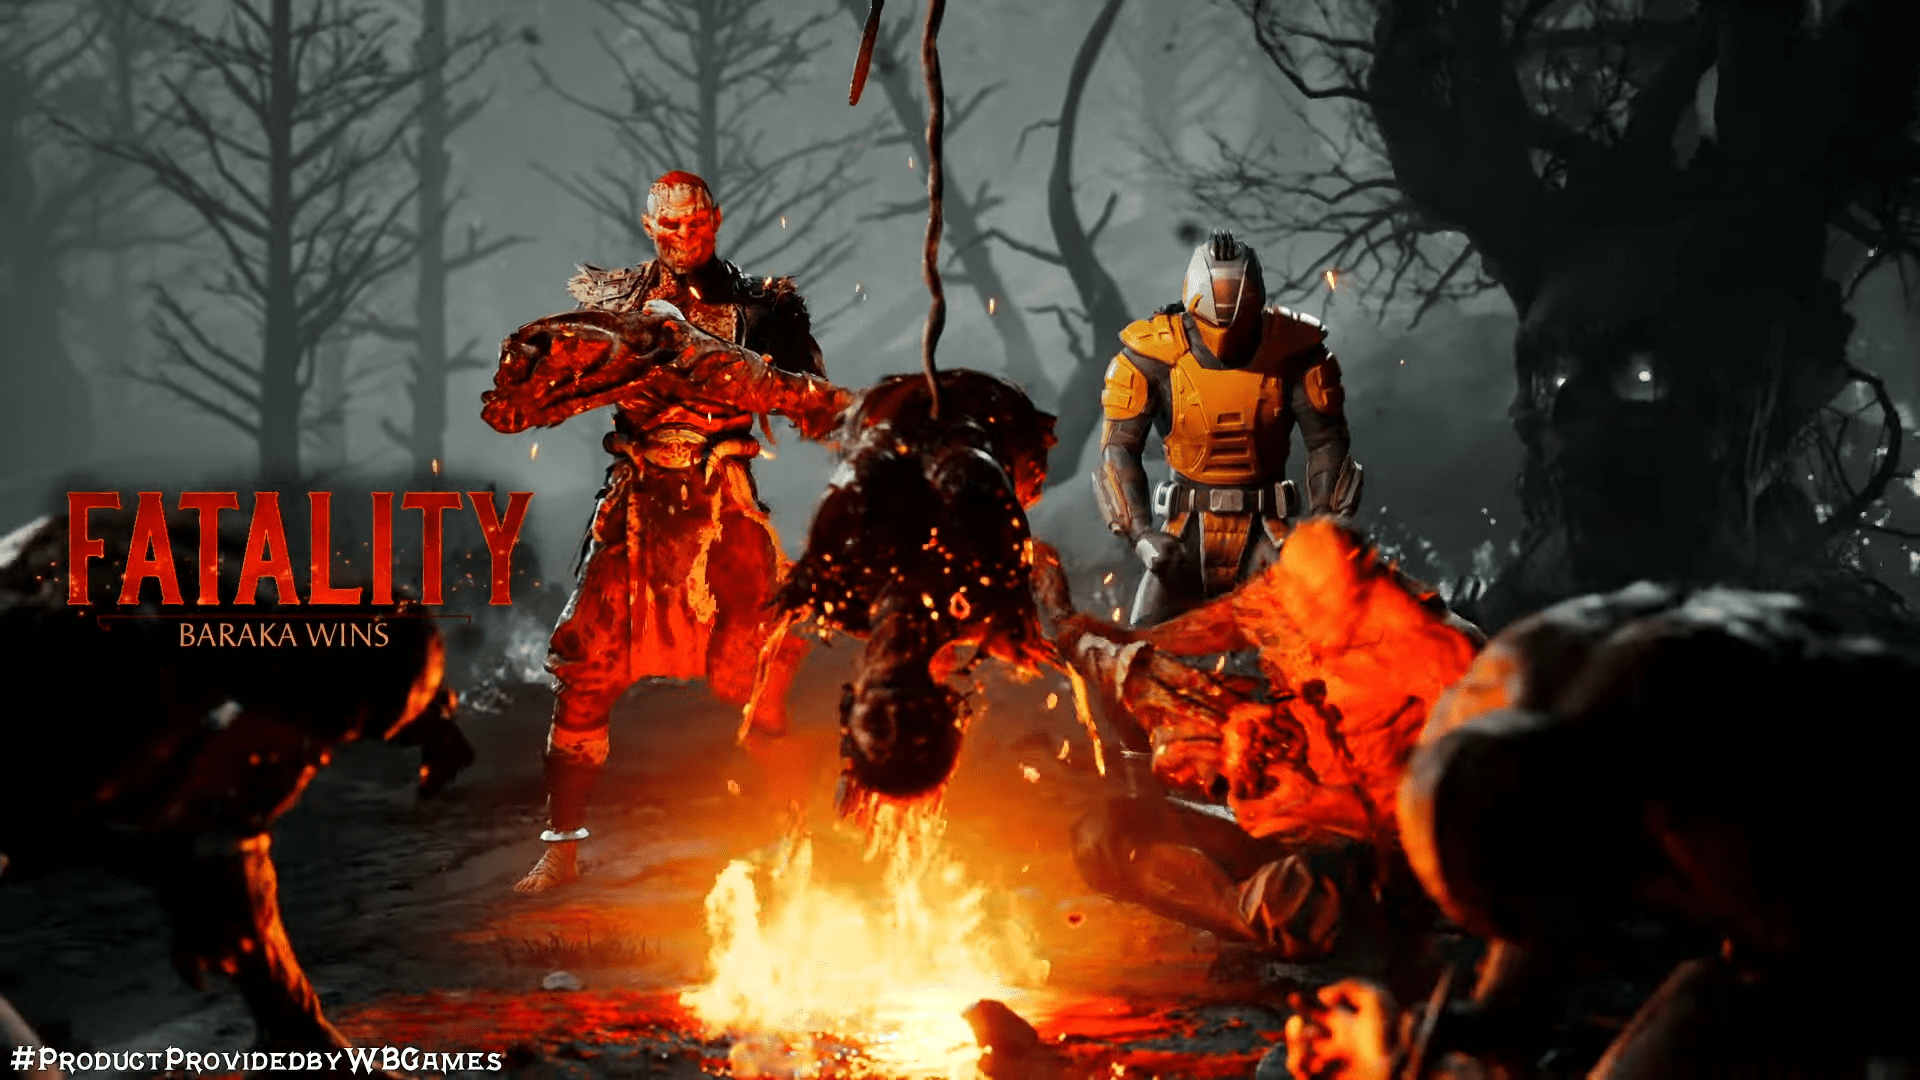 Mortal Kombat 11: Fatality, personagens, preço; veja tudo sobre o jogo, esports